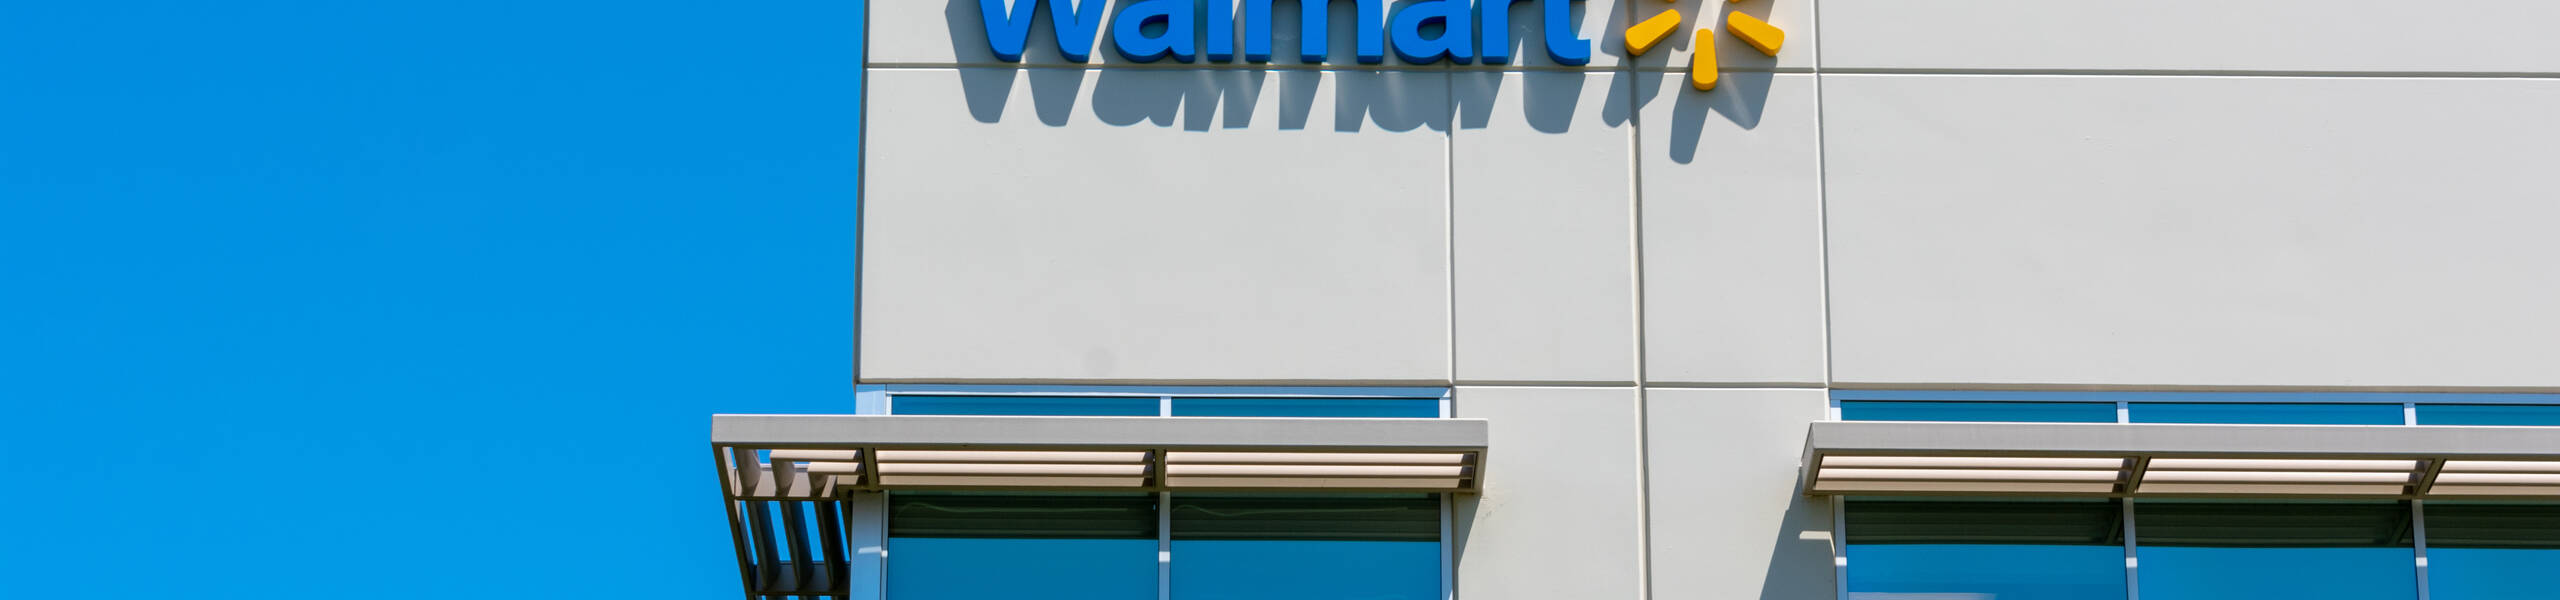 Walmart earnings outlook